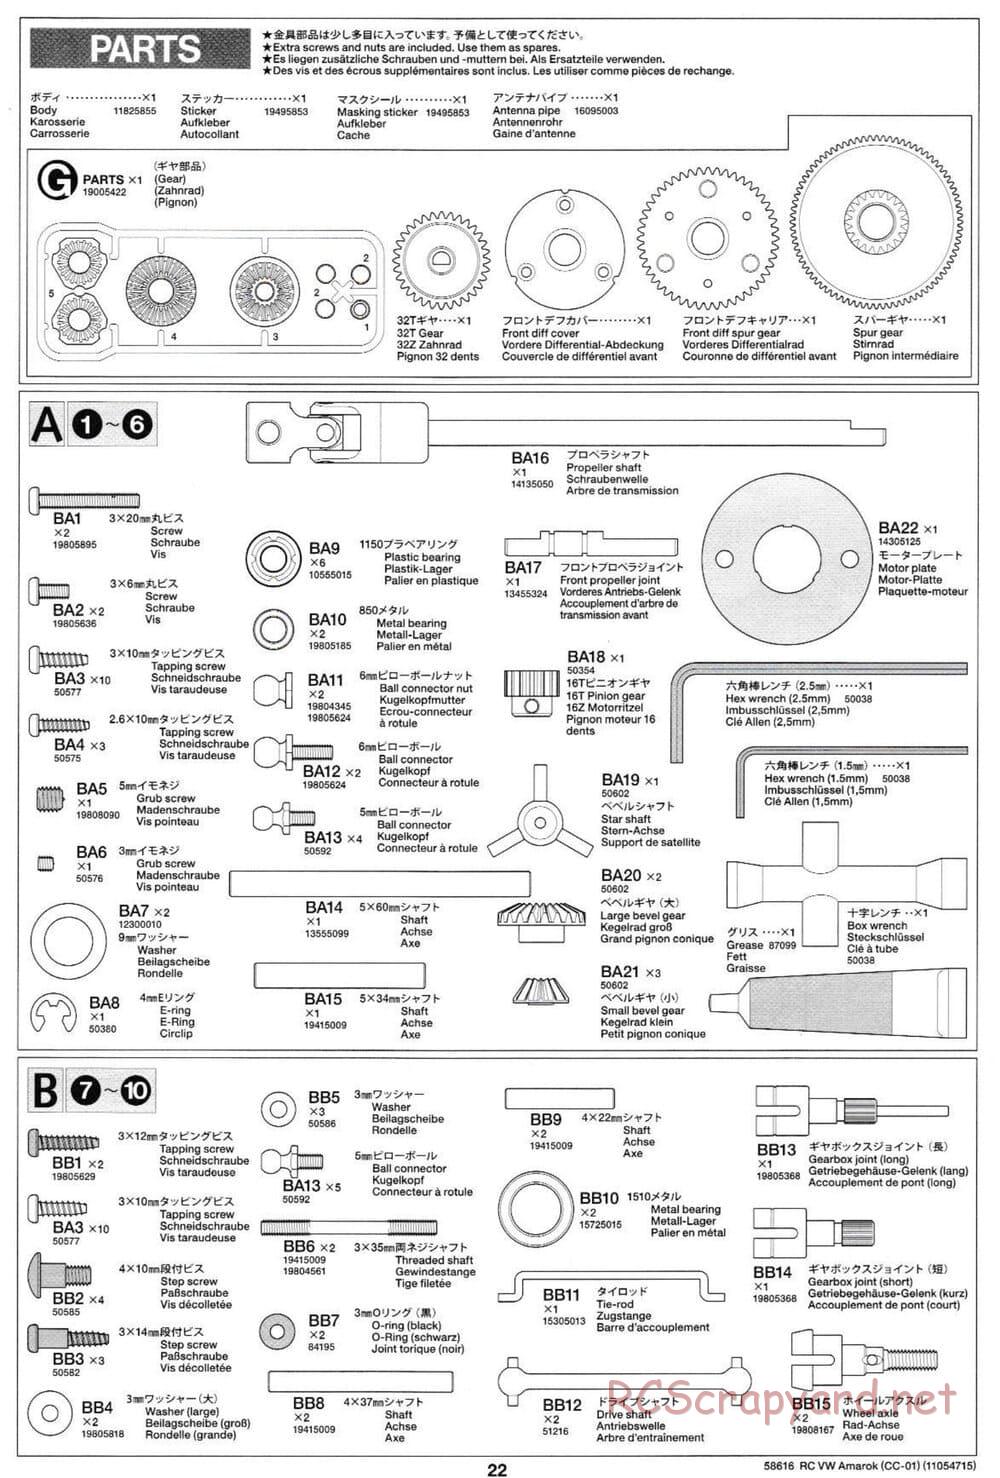 Tamiya - Volkswagen Amarok - CC-01 Chassis - Manual - Page 22